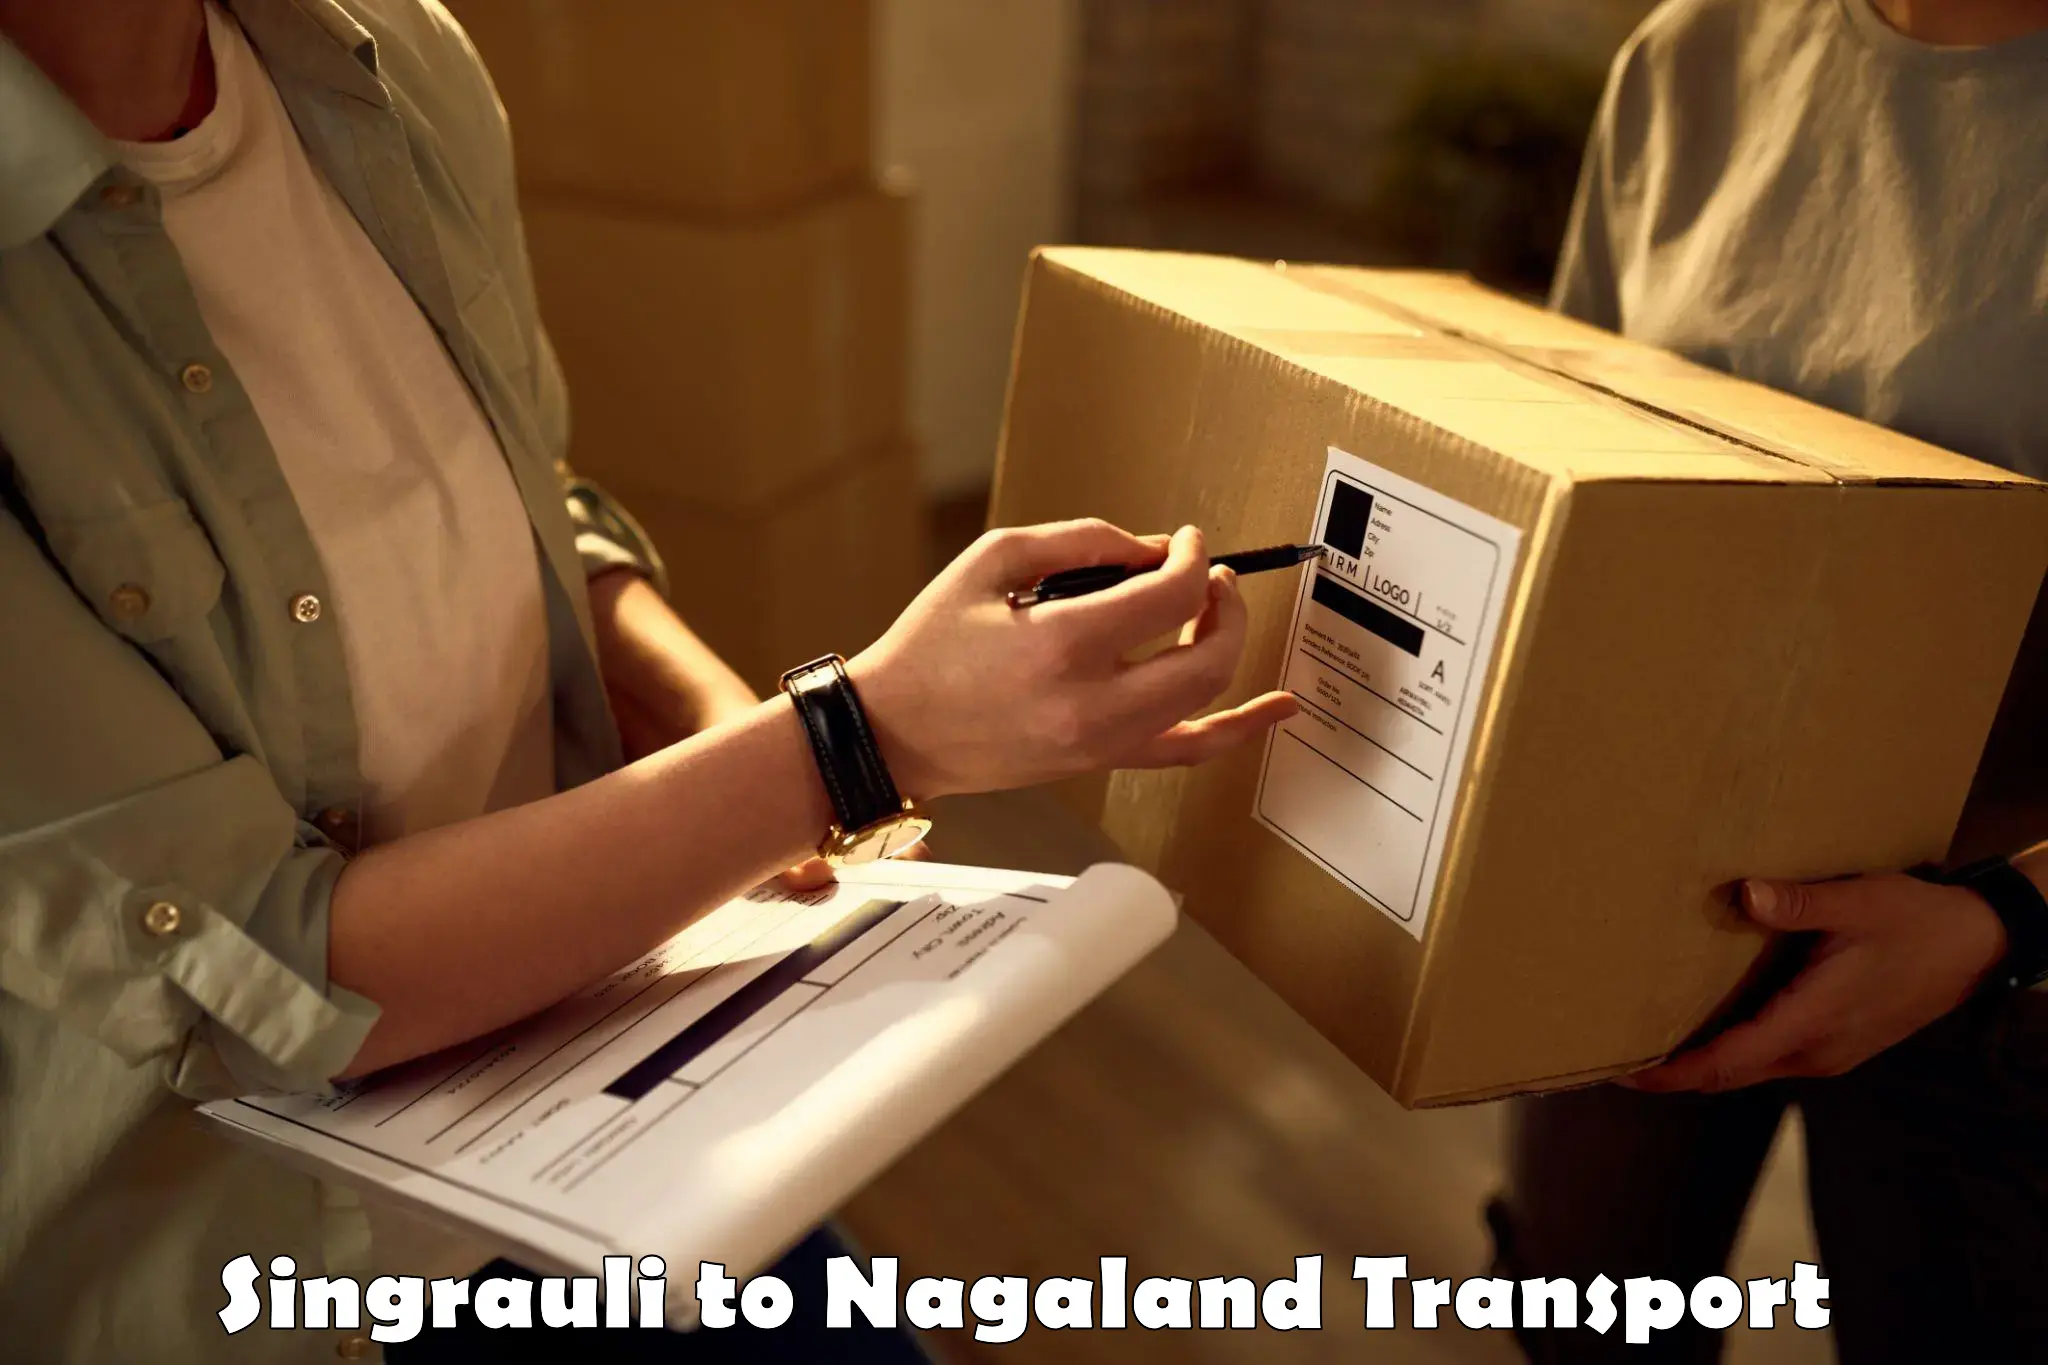 Furniture transport service Singrauli to Tuensang